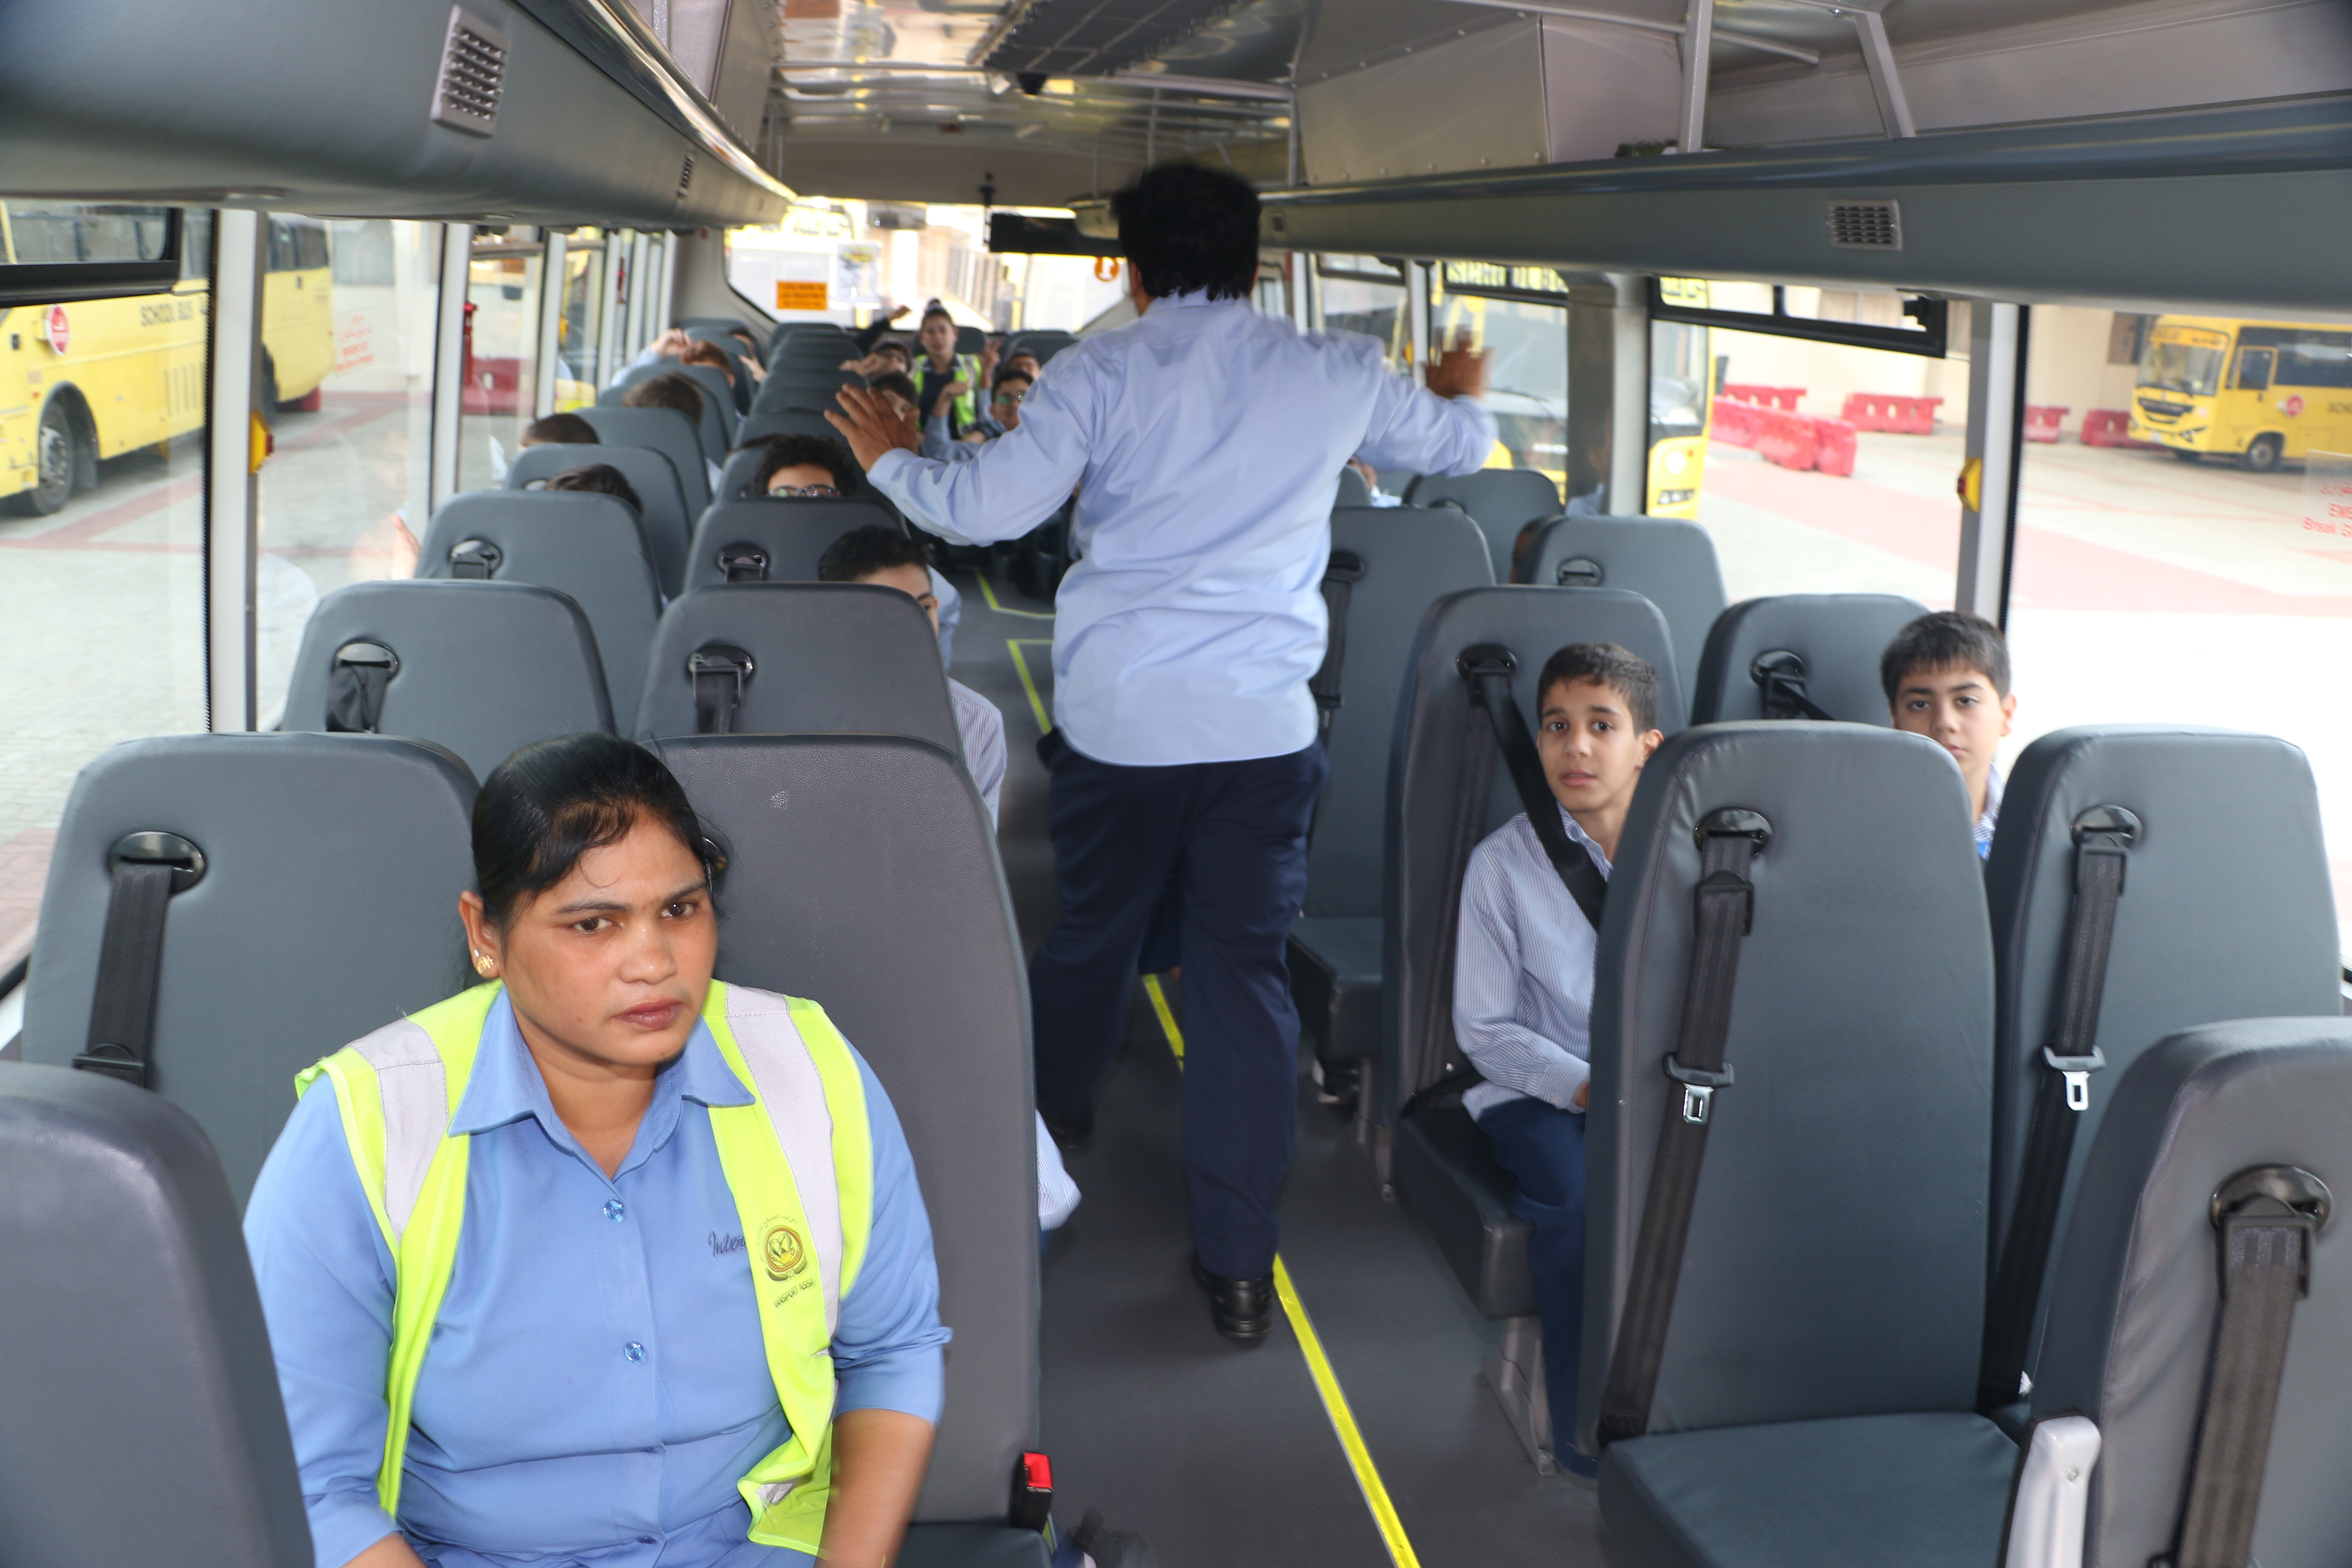 تدريب على إخلاء الحافلة المدرسية في حالة الطوارئ